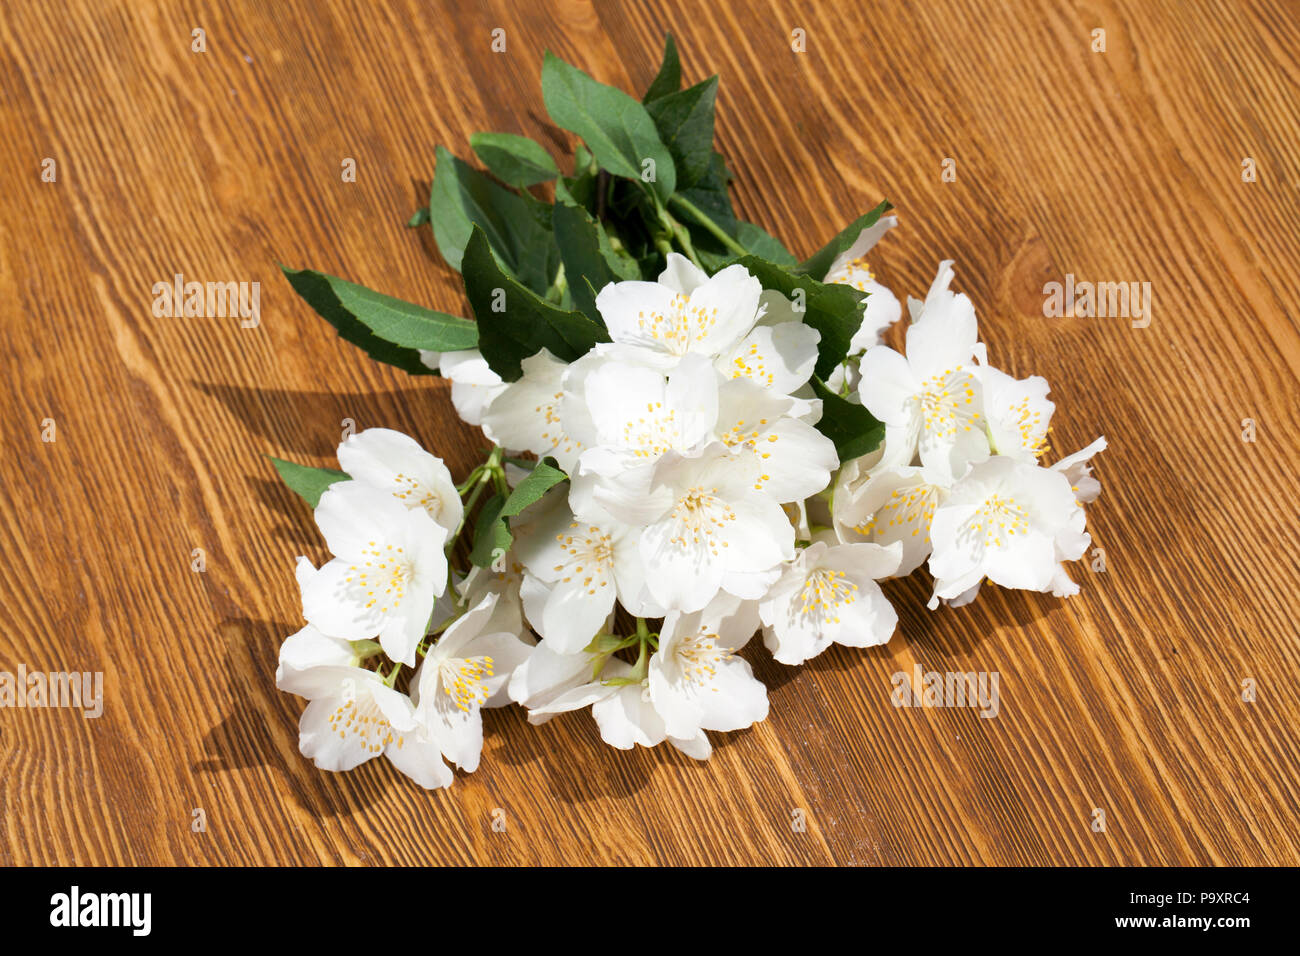 Herunterscheint angenehm duftenden Jasminblüten, zusammen auf einem Holzbrett gestapelt, Feder Stockfoto